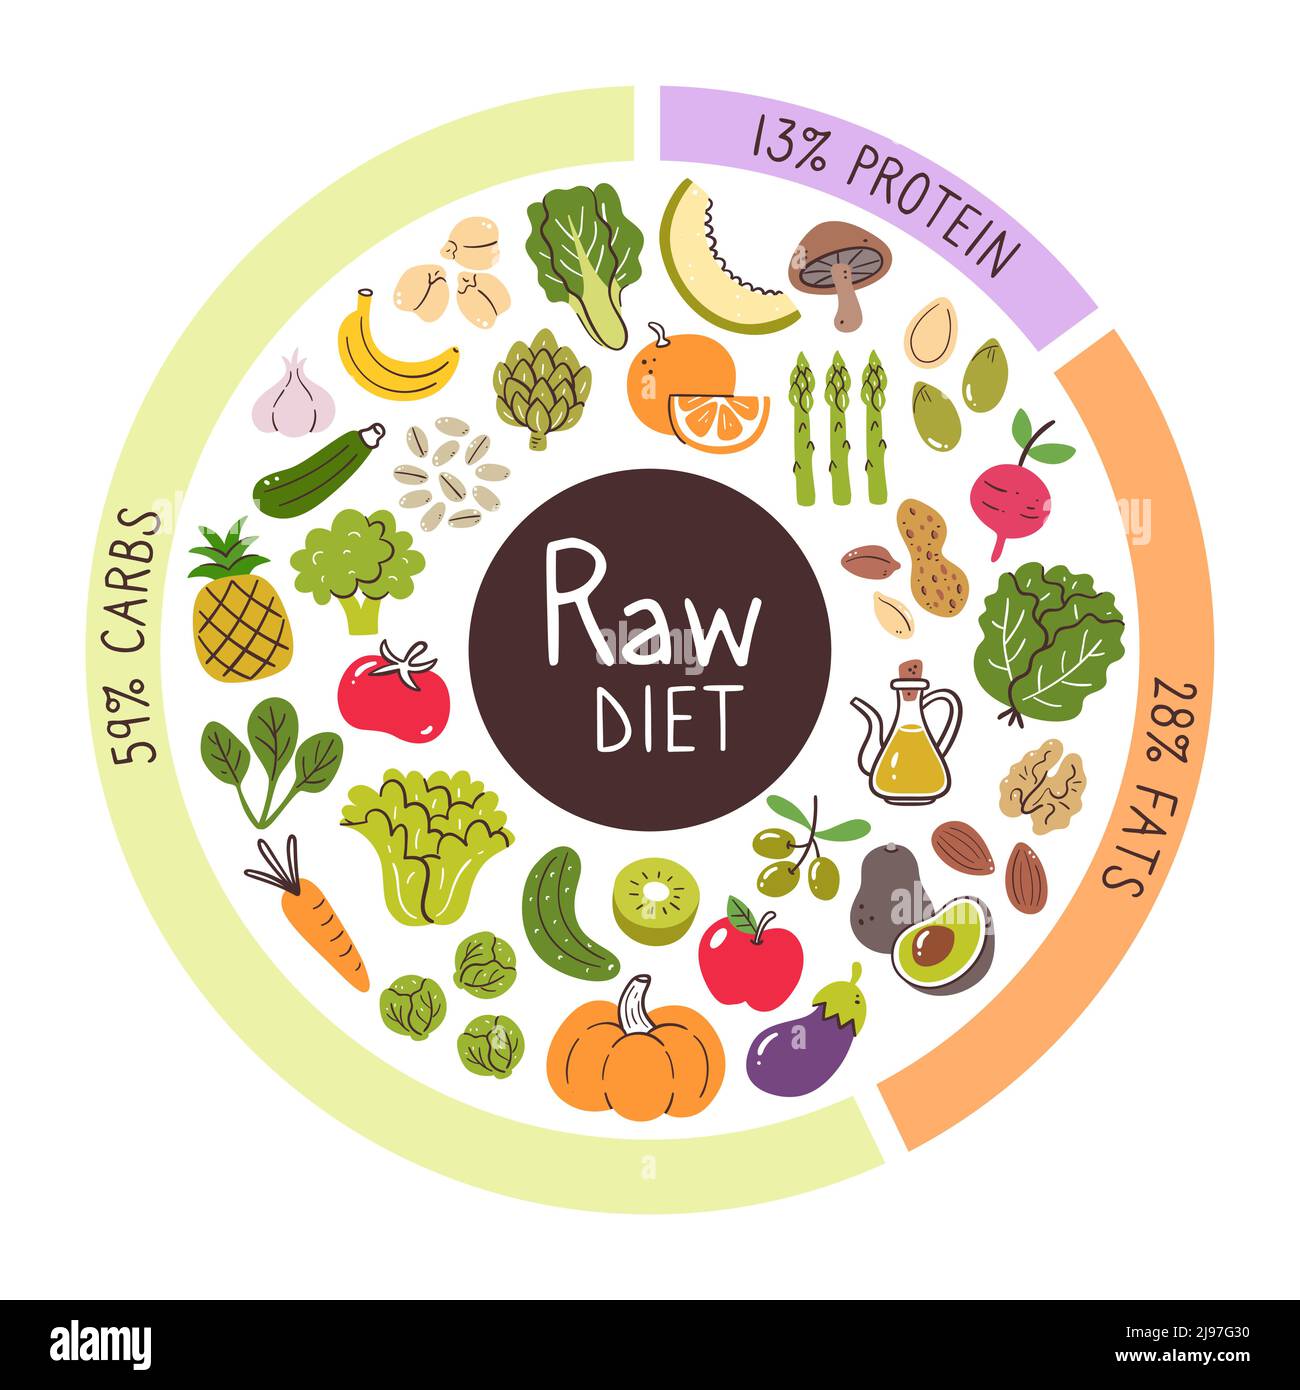 Rohe Ernährung Lebensmittel Zutaten. Prozentsätze von Kohlenhydraten, Eiweiß und Fett am meisten in dieser Diät verwendet. Food Icon Kollektion. Stock Vektor